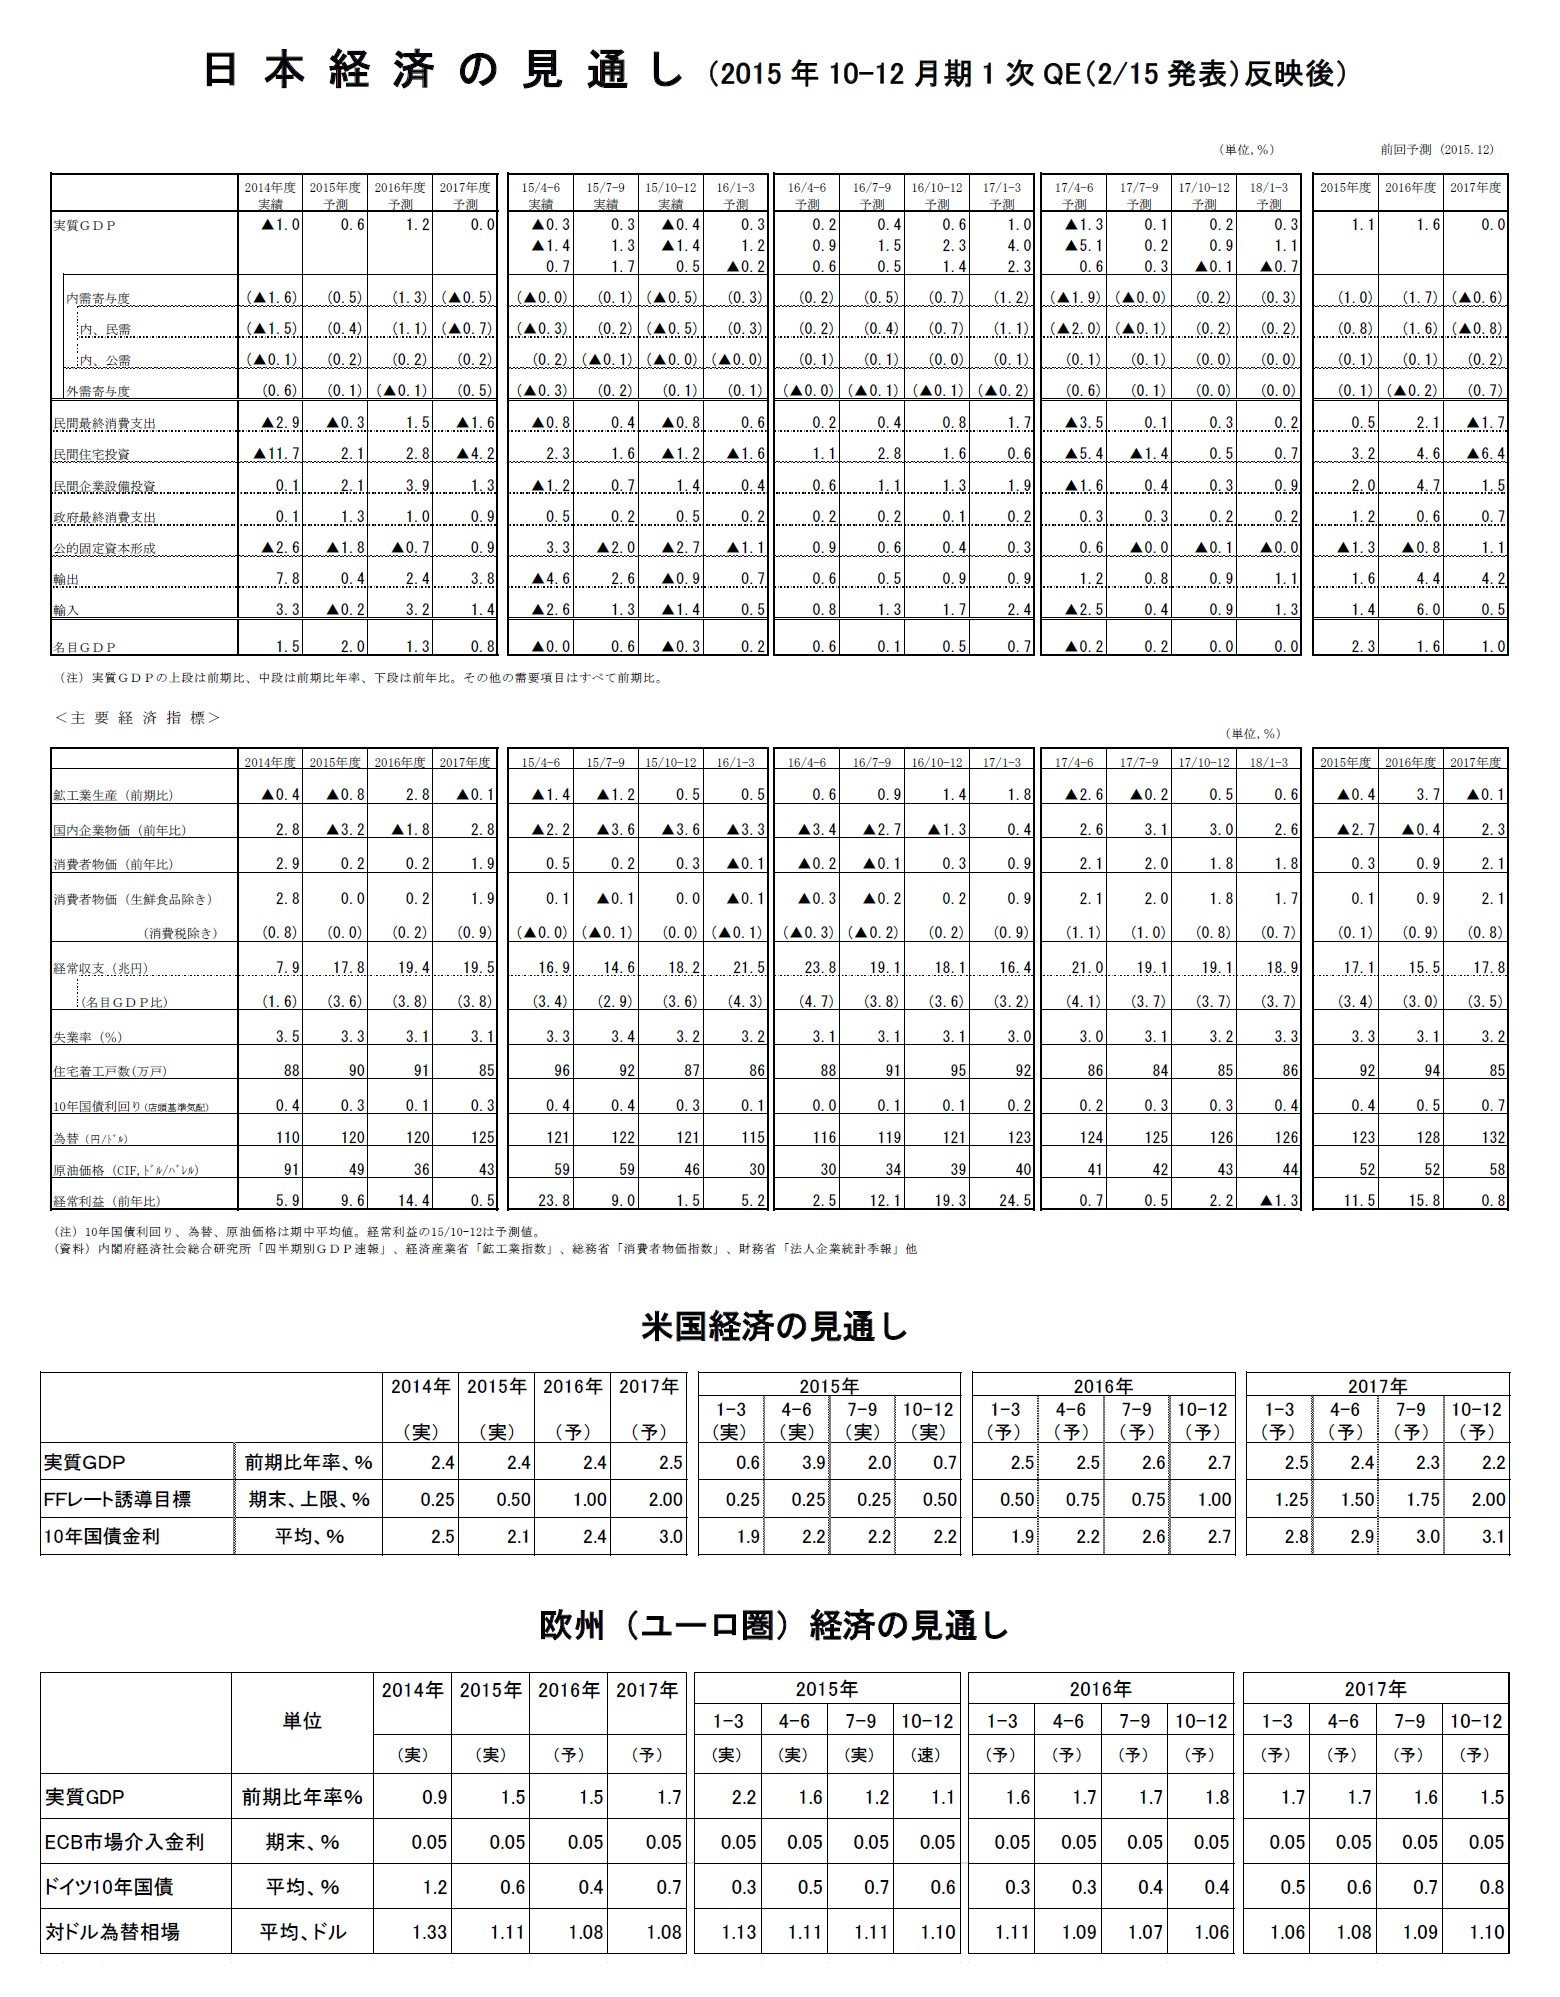 日本経済の見通し（2015年10-12月期1次QE（2/15発表）反映後）/米国経済の見通し/欧州（ユーロ圏）経済の見通し